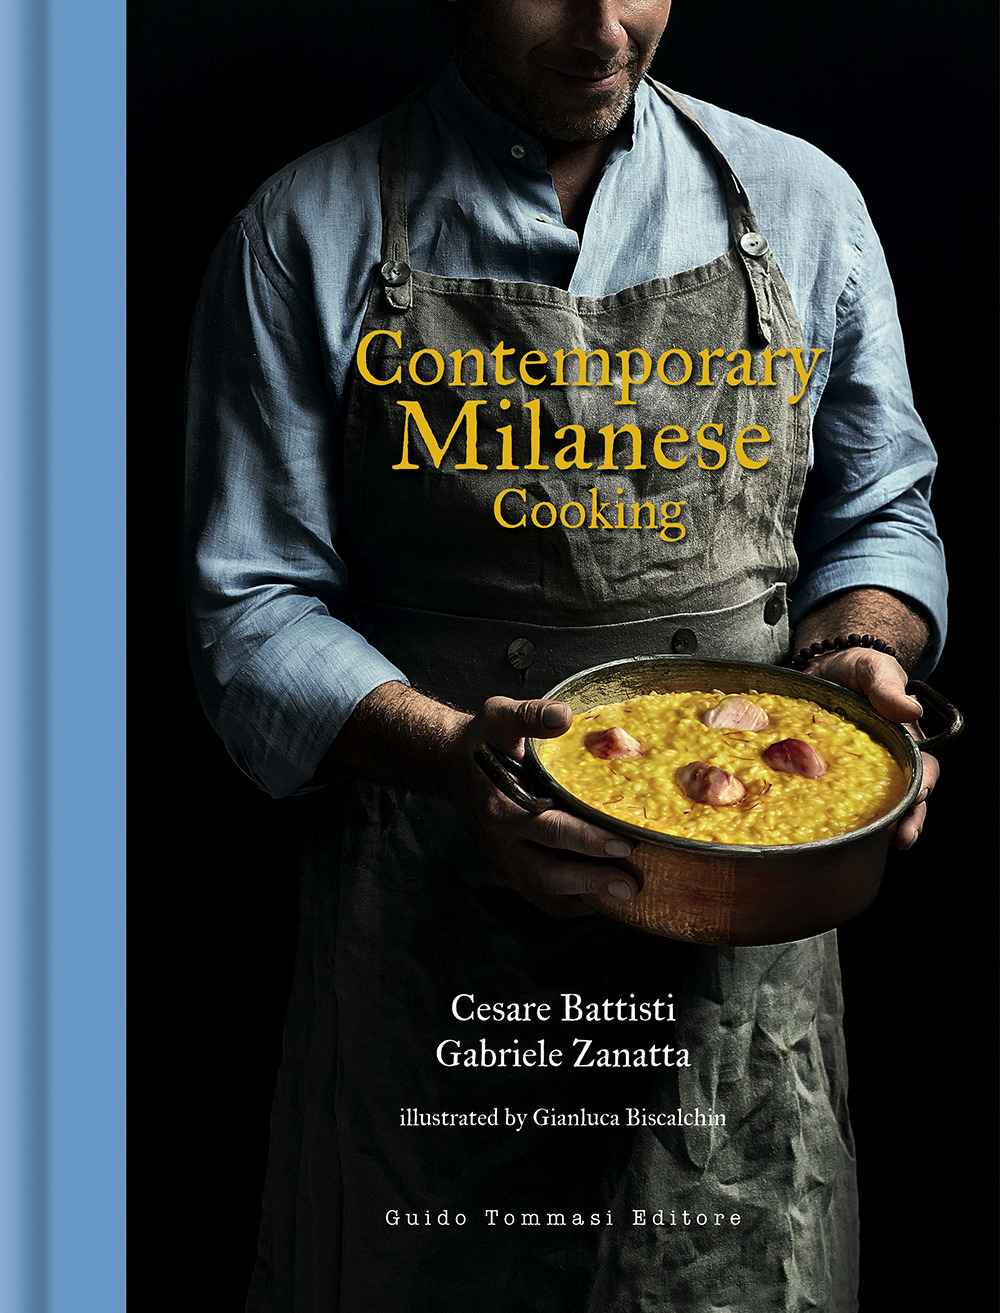 Libri Cesare Battisti / Gabriele Zanatta - Contemporary Milanese Cooking NUOVO SIGILLATO, EDIZIONE DEL 03/02/2022 SUBITO DISPONIBILE